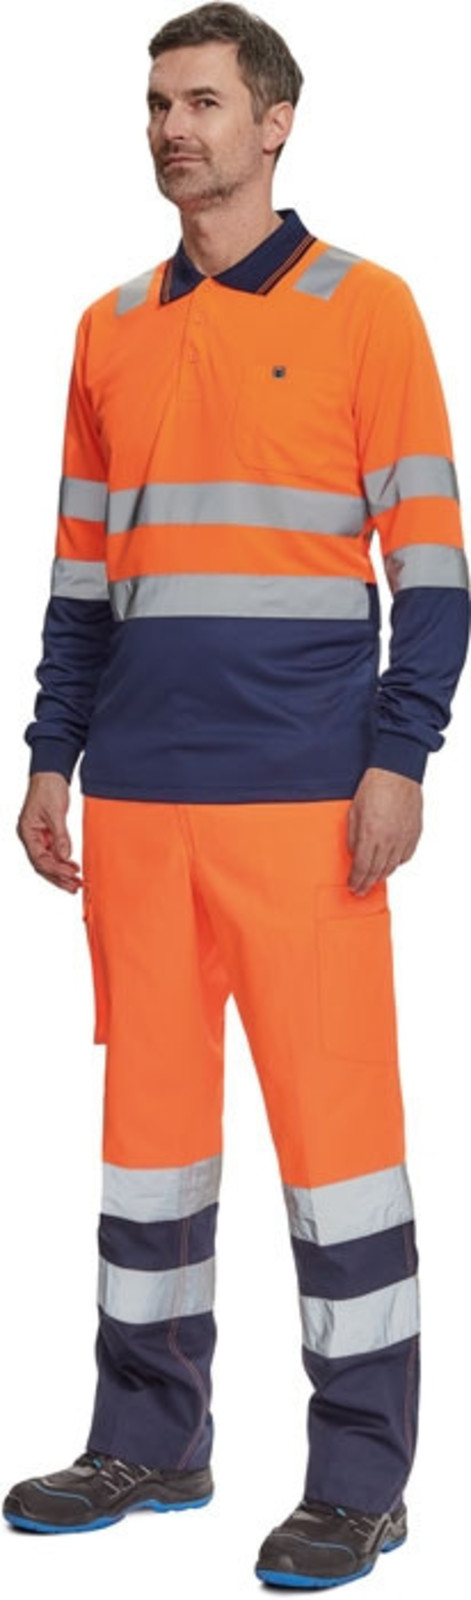 Reflexné nohavice Cerva Burgos HV - veľkosť: 54, farba: oranžová/navy